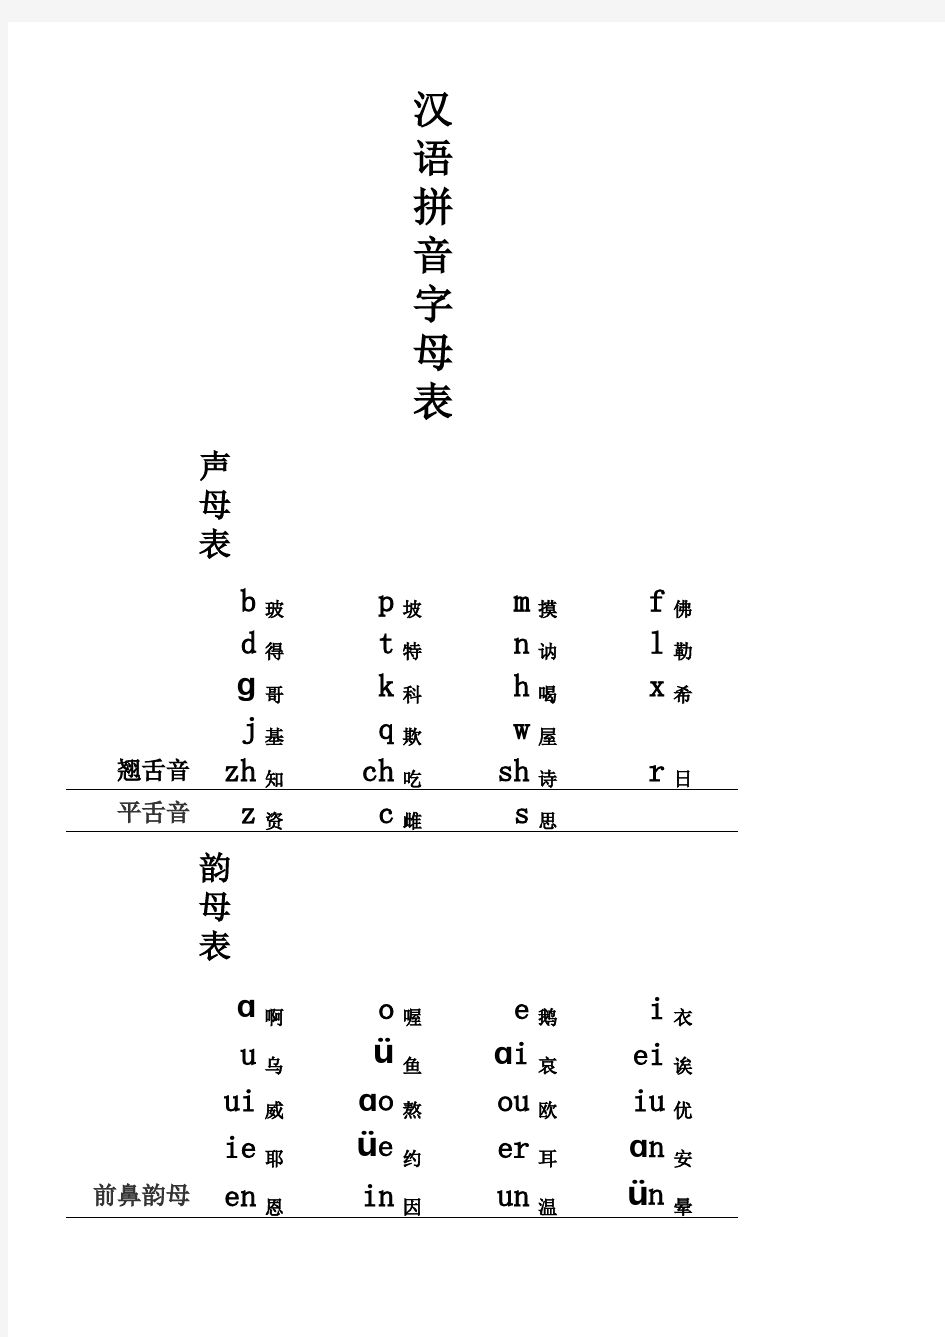 汉语拼音字母表(带辅读音)补充祥细版